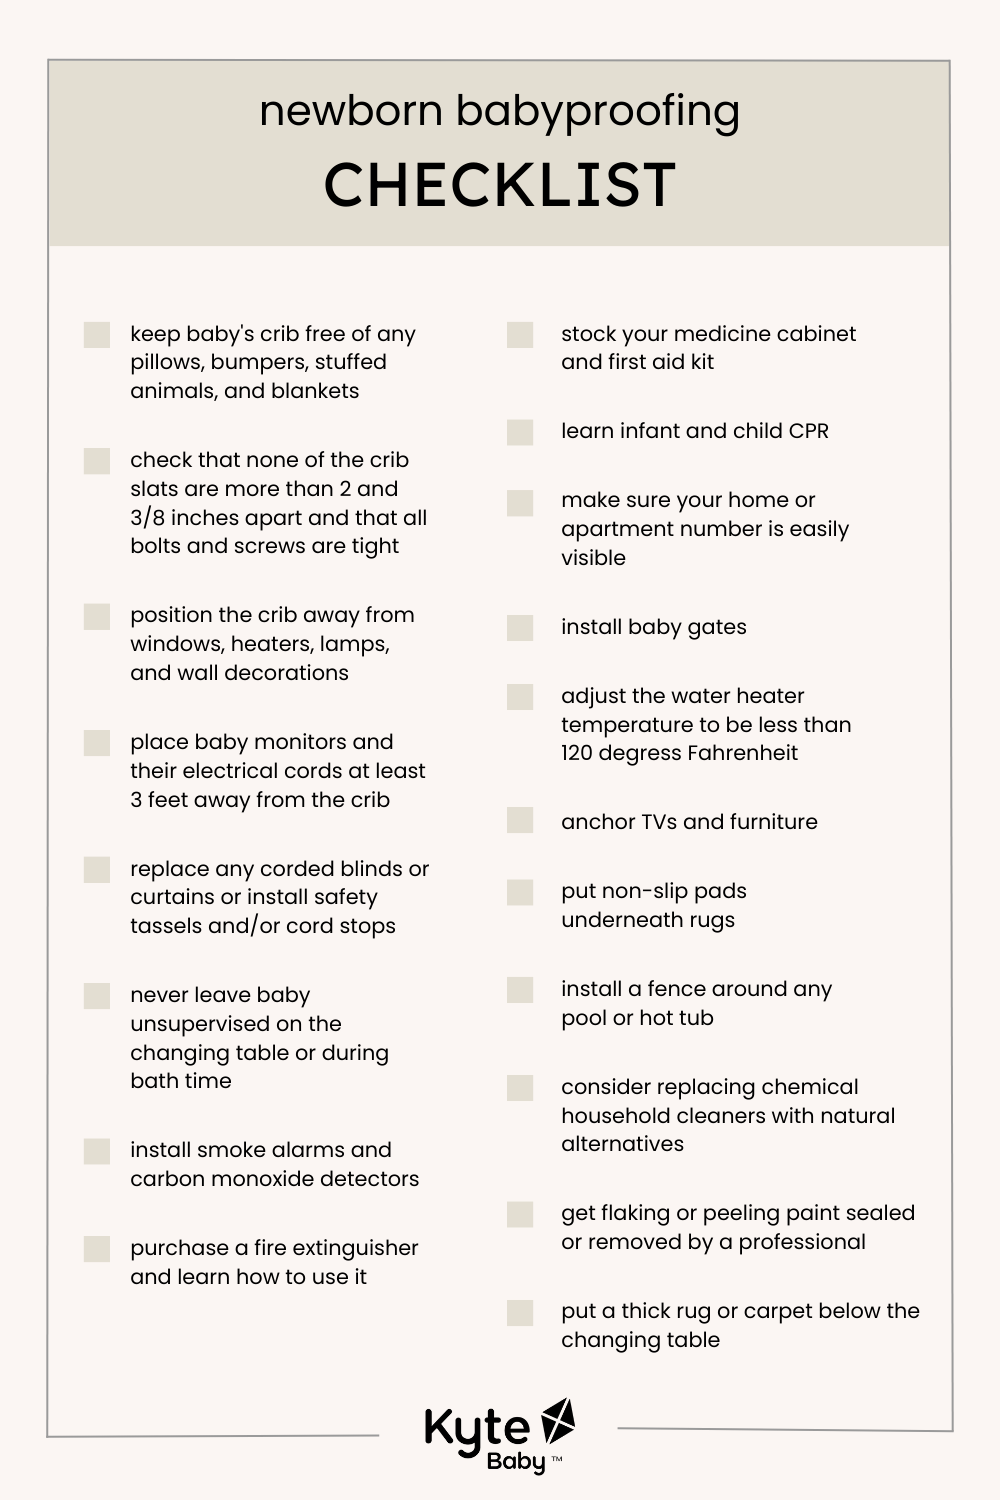 Kyte Baby Newborn Babyproofing Checklist